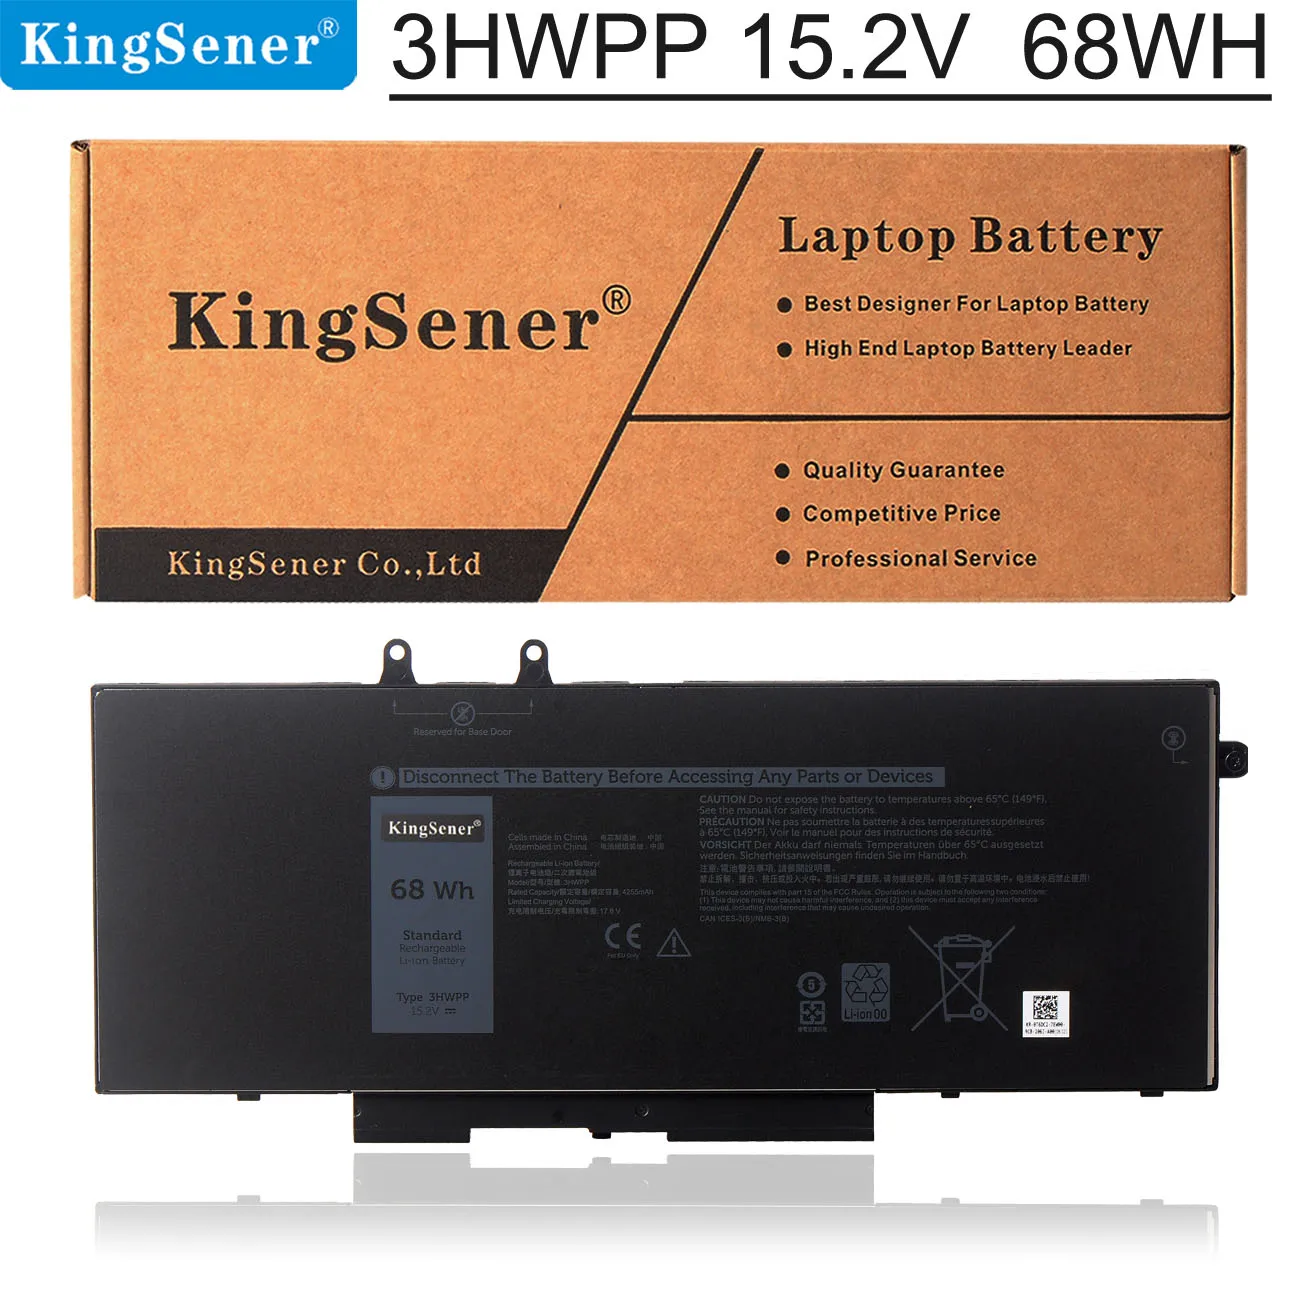 

KingSener 15.2V 68WH 3HWPP Laptop Battery For Dell Latitude 5401 5501 5411 5410 5511 3541 Series Notebook P80F003 P98G003